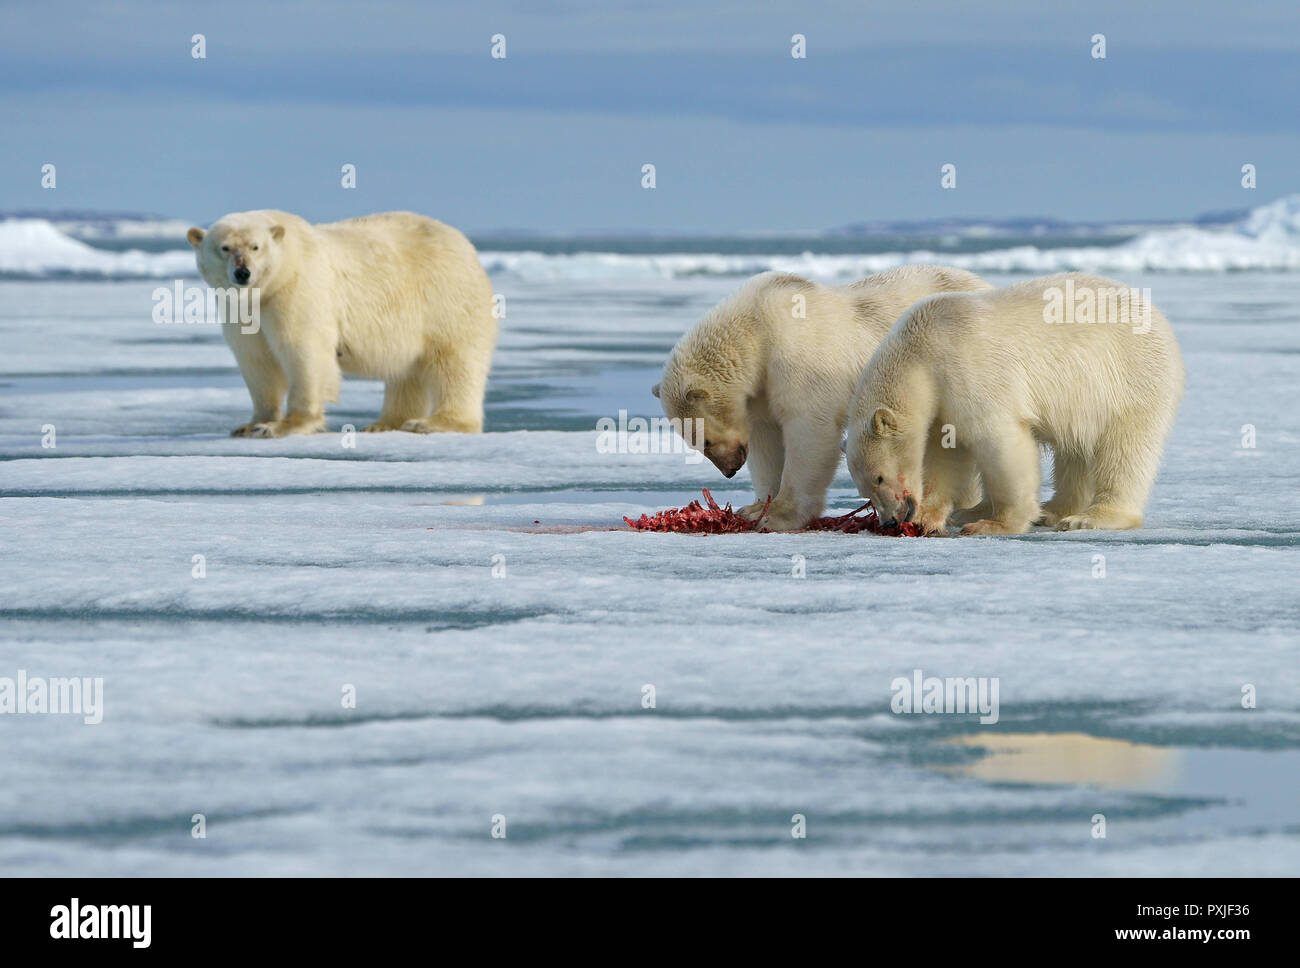 Gli orsi polari (Ursus maritimus), giovani animali alimentazione sulla carcassa di una guarnizione catturati nella neve, madre animale in retro Foto Stock